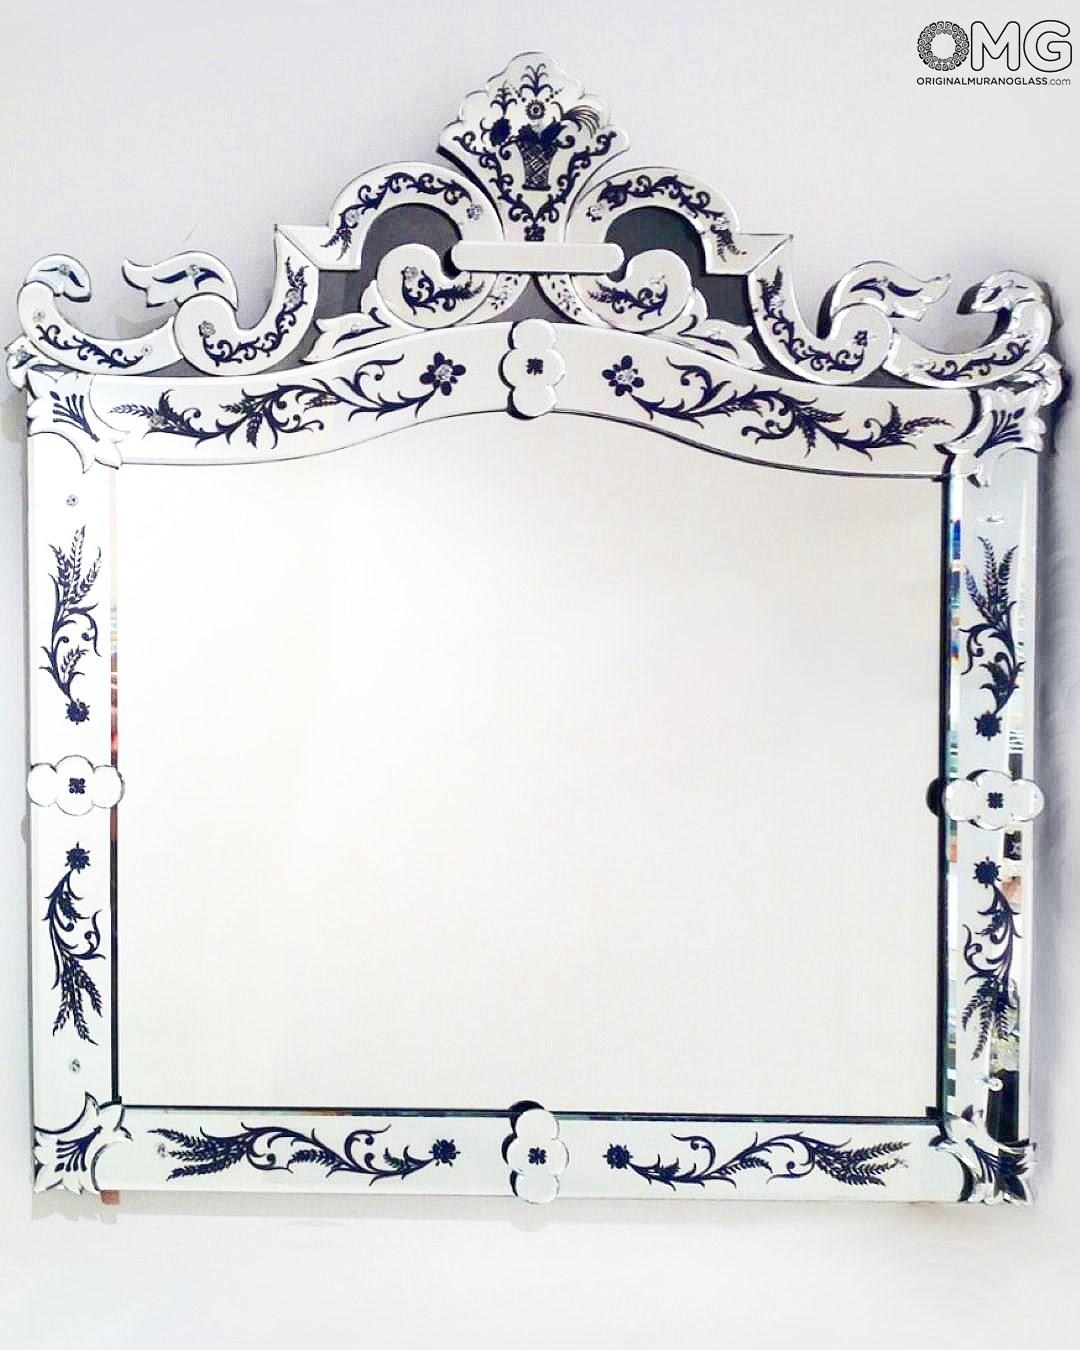 Specchio veneziano